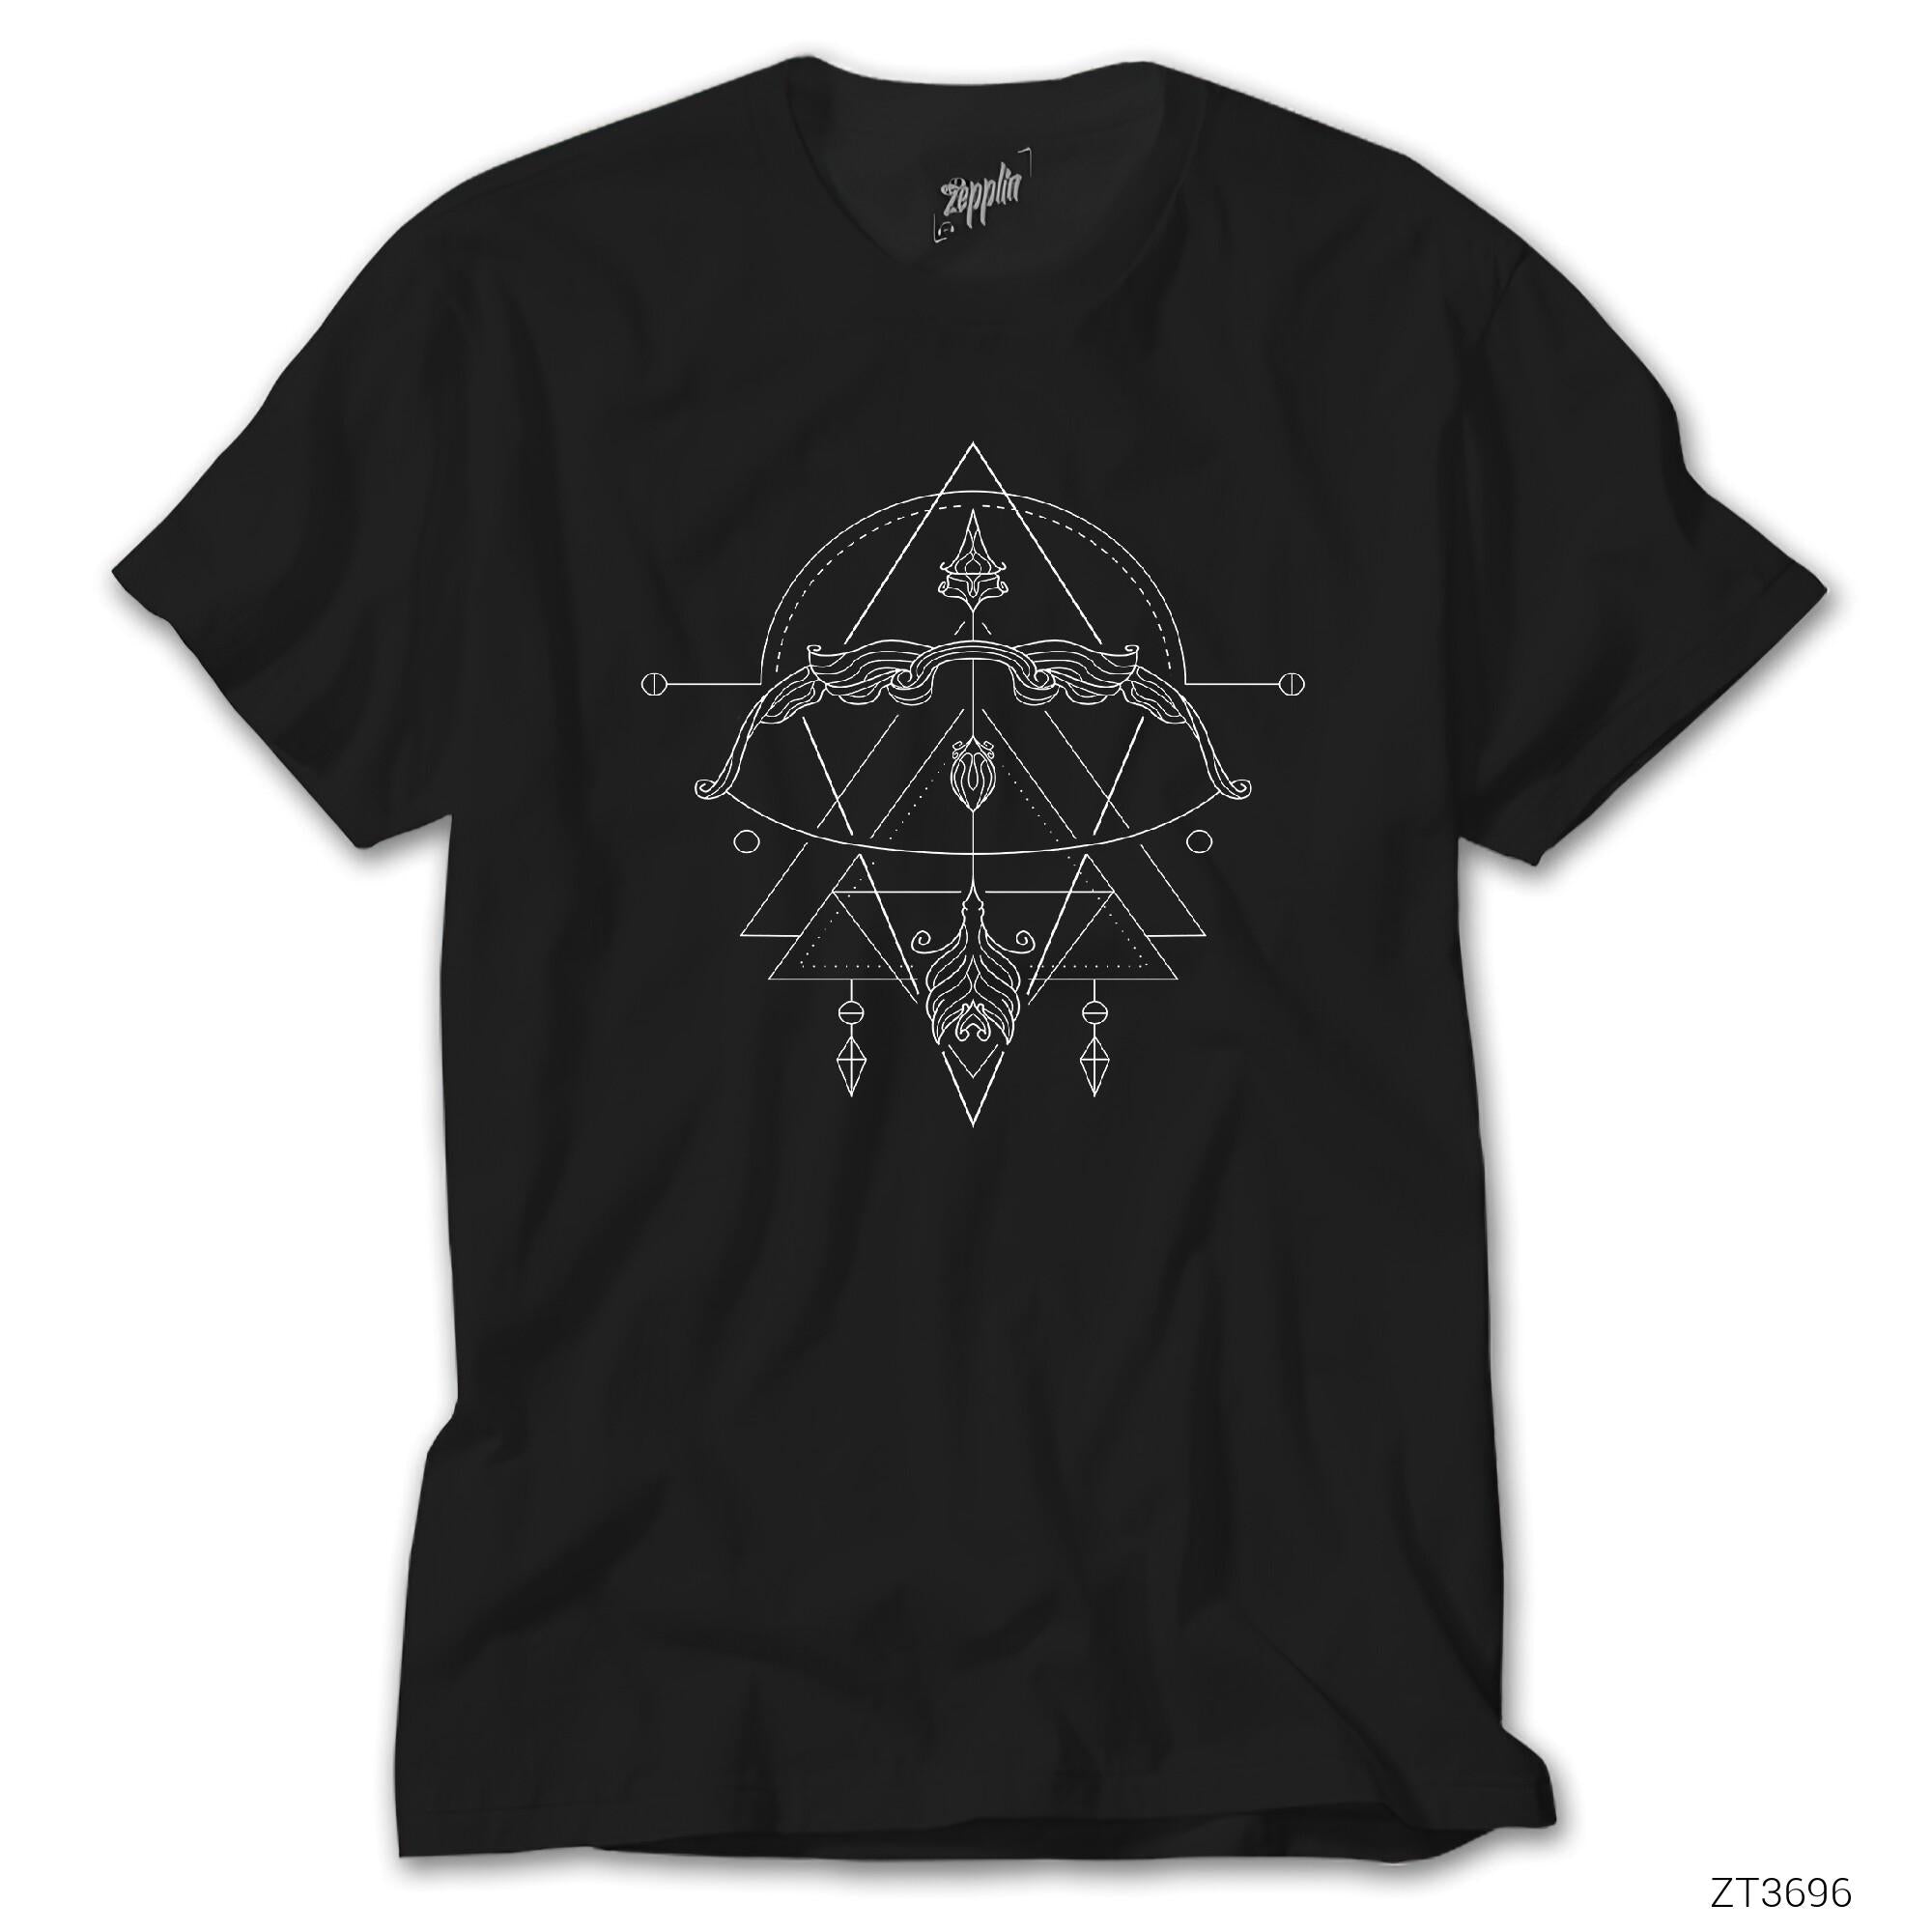 Yay Burcu Geometrik Siyah Tişört